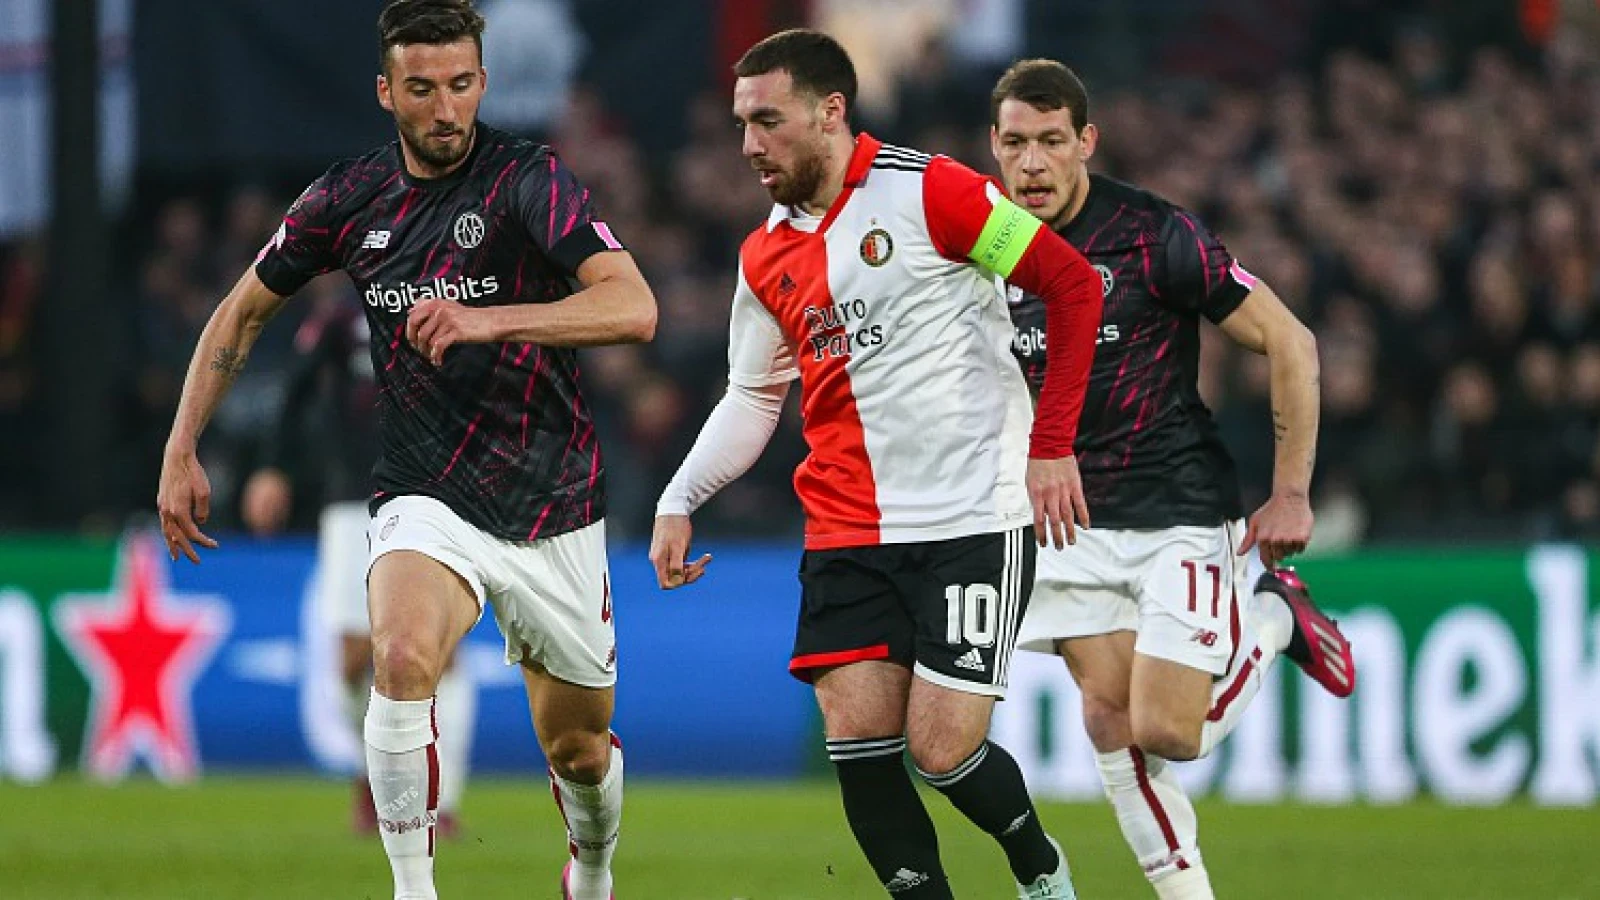 Telegraaf: 'Kökçü niet gefocust op transfer maar op het winnen van prijzen met Feyenoord'